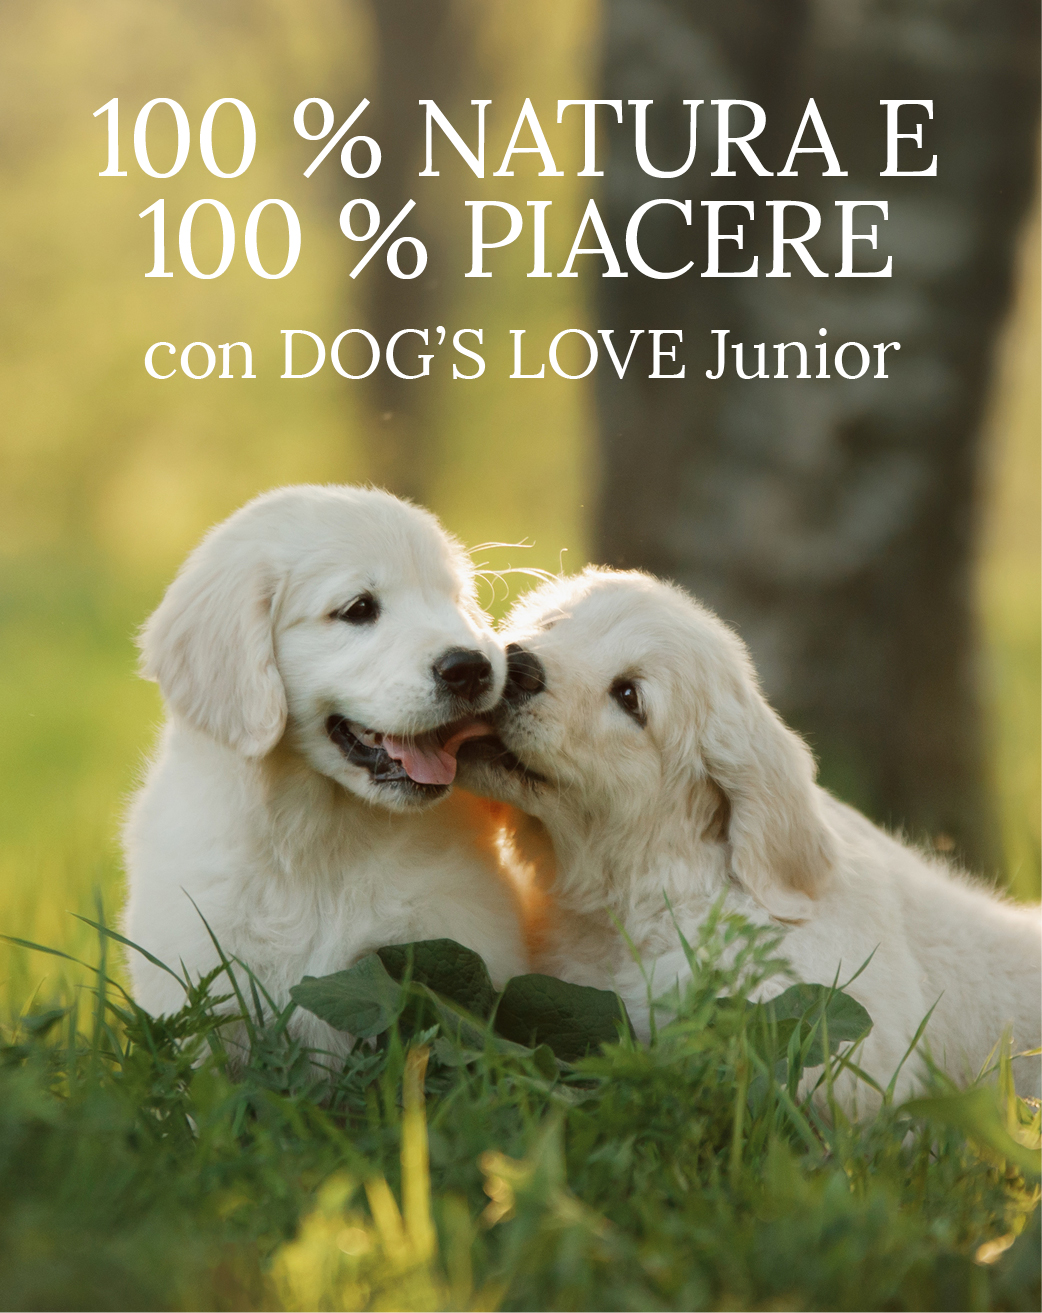 Cuccioli in un prato con testo: 100% natura & 100% divertimento con DOG'S LOVE Junior